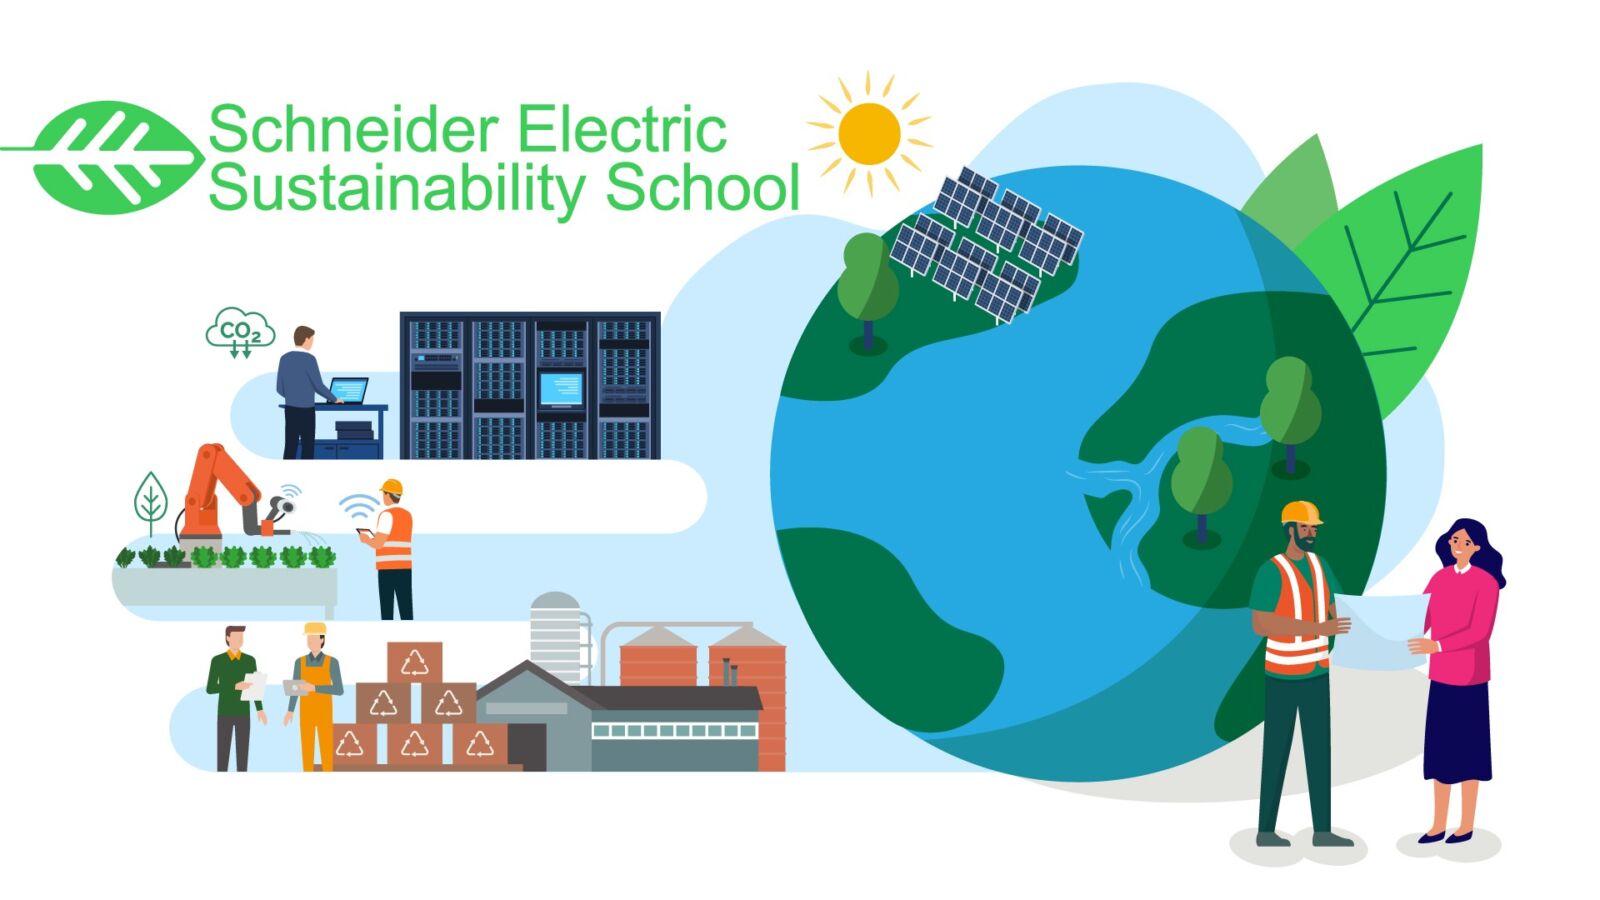 施耐德電機永續學院開放報名 免費課程助力企業邁向淨零排放 300